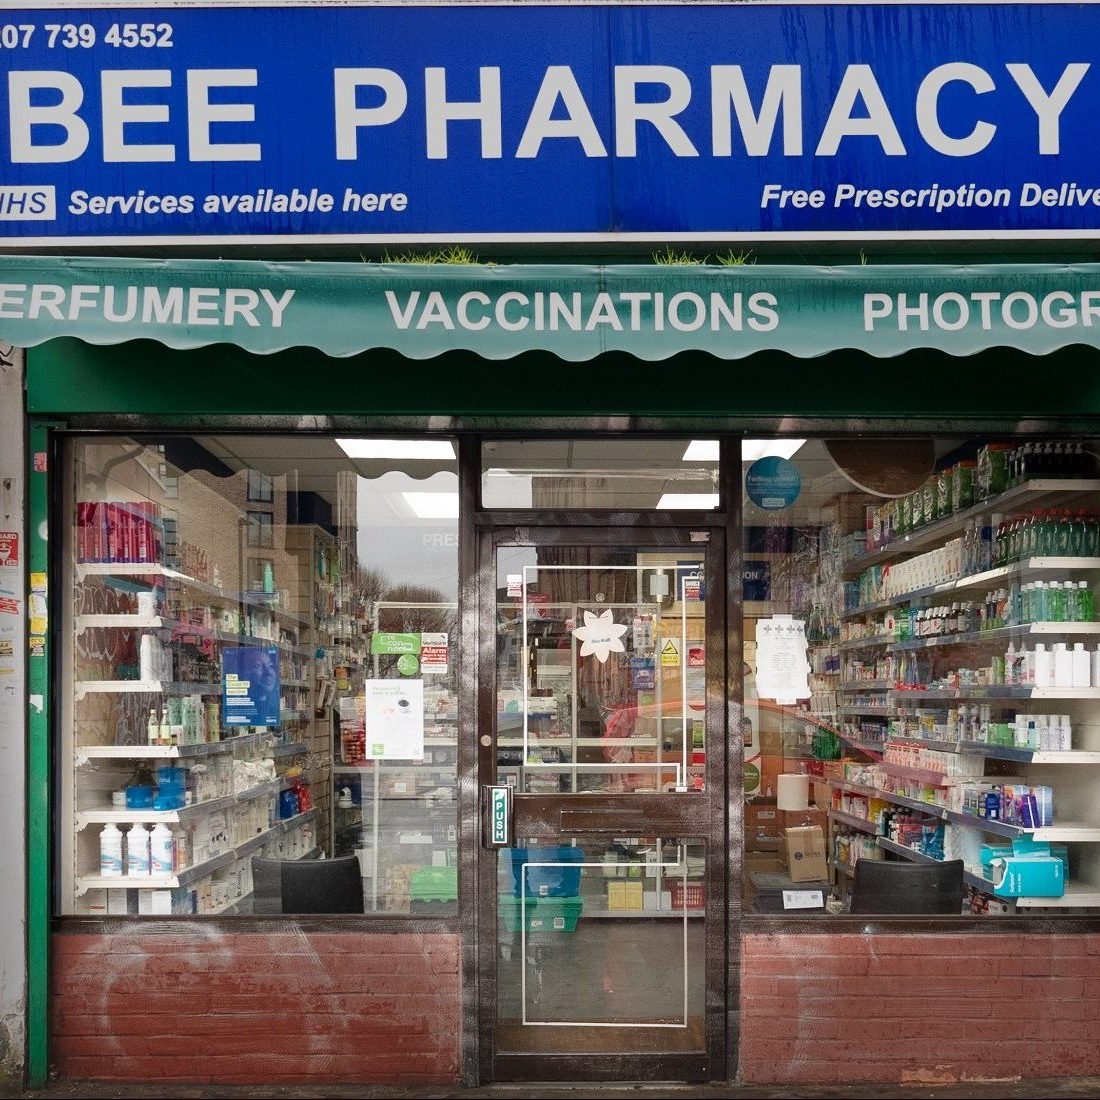 Bee Pharmacy